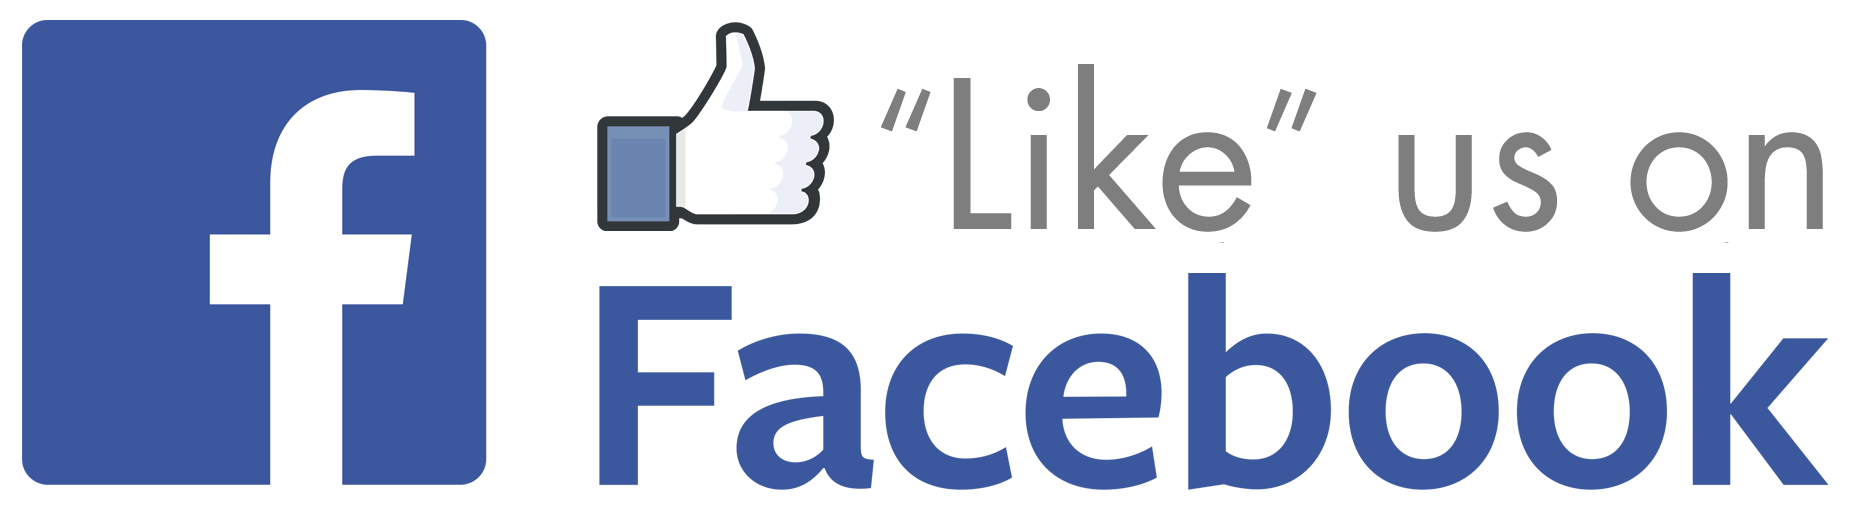 Like Us On Facebook Logo - Like Facebookg Logo Png Image